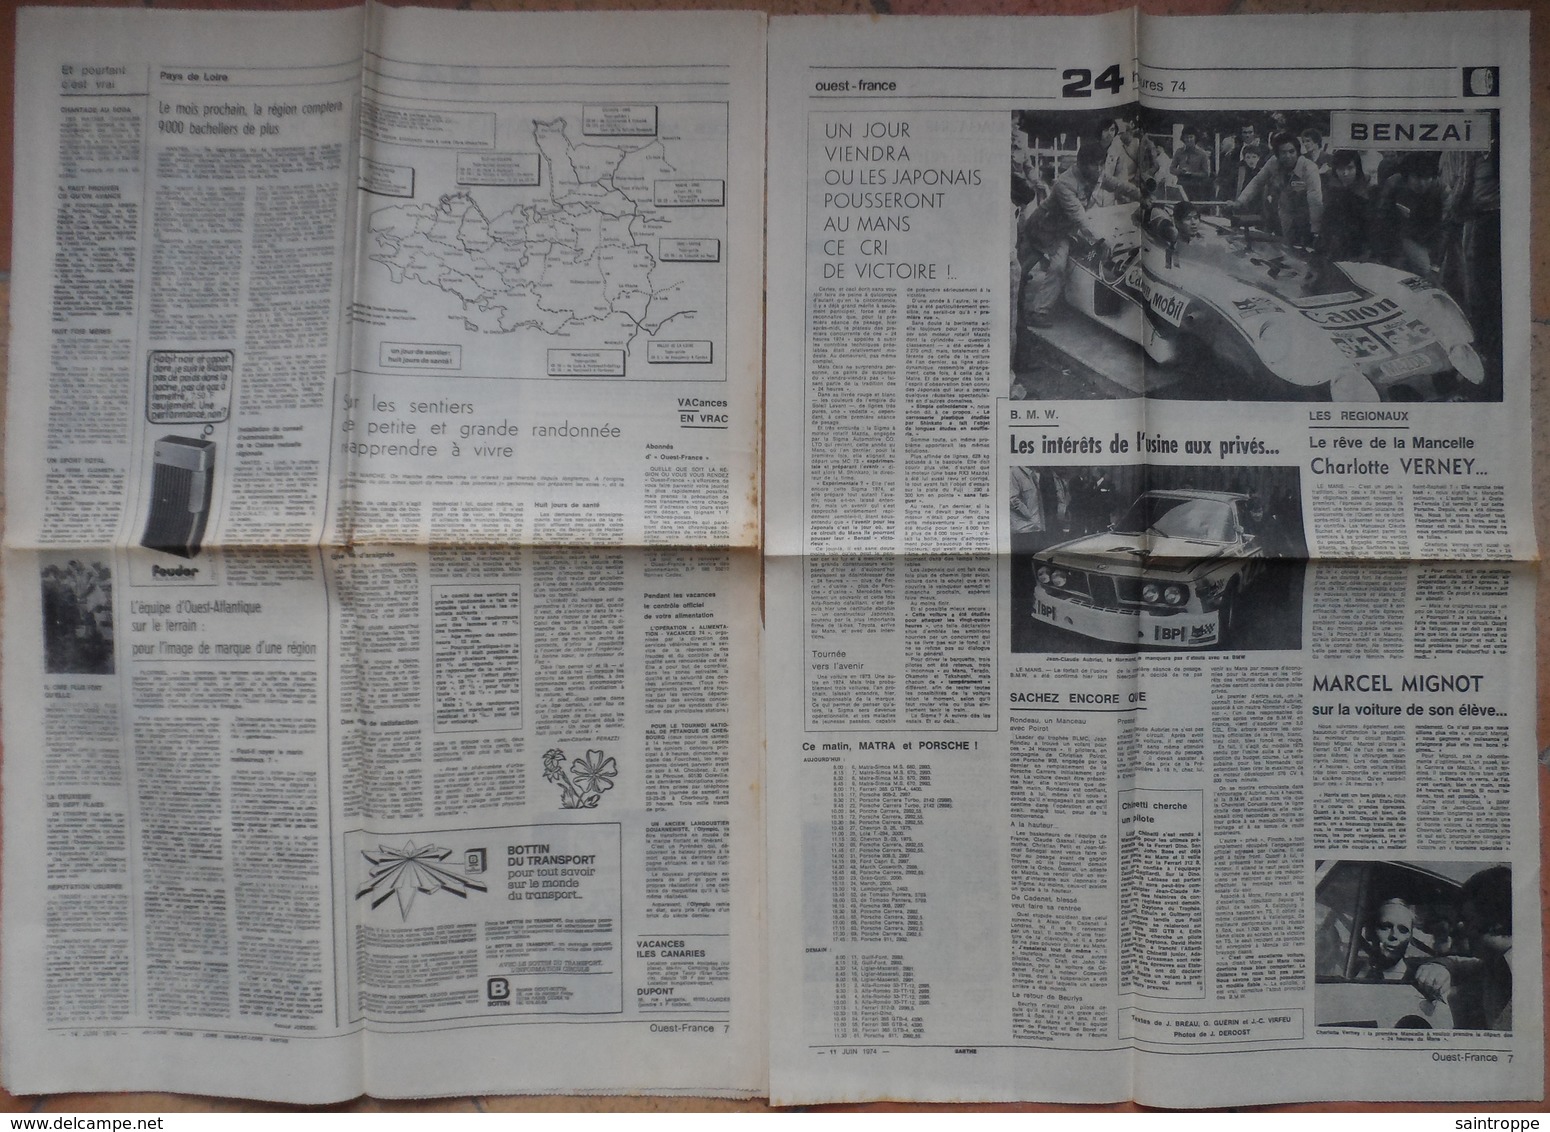 24 H du Mans 1974.Lot de 26 pages de différents journaux.